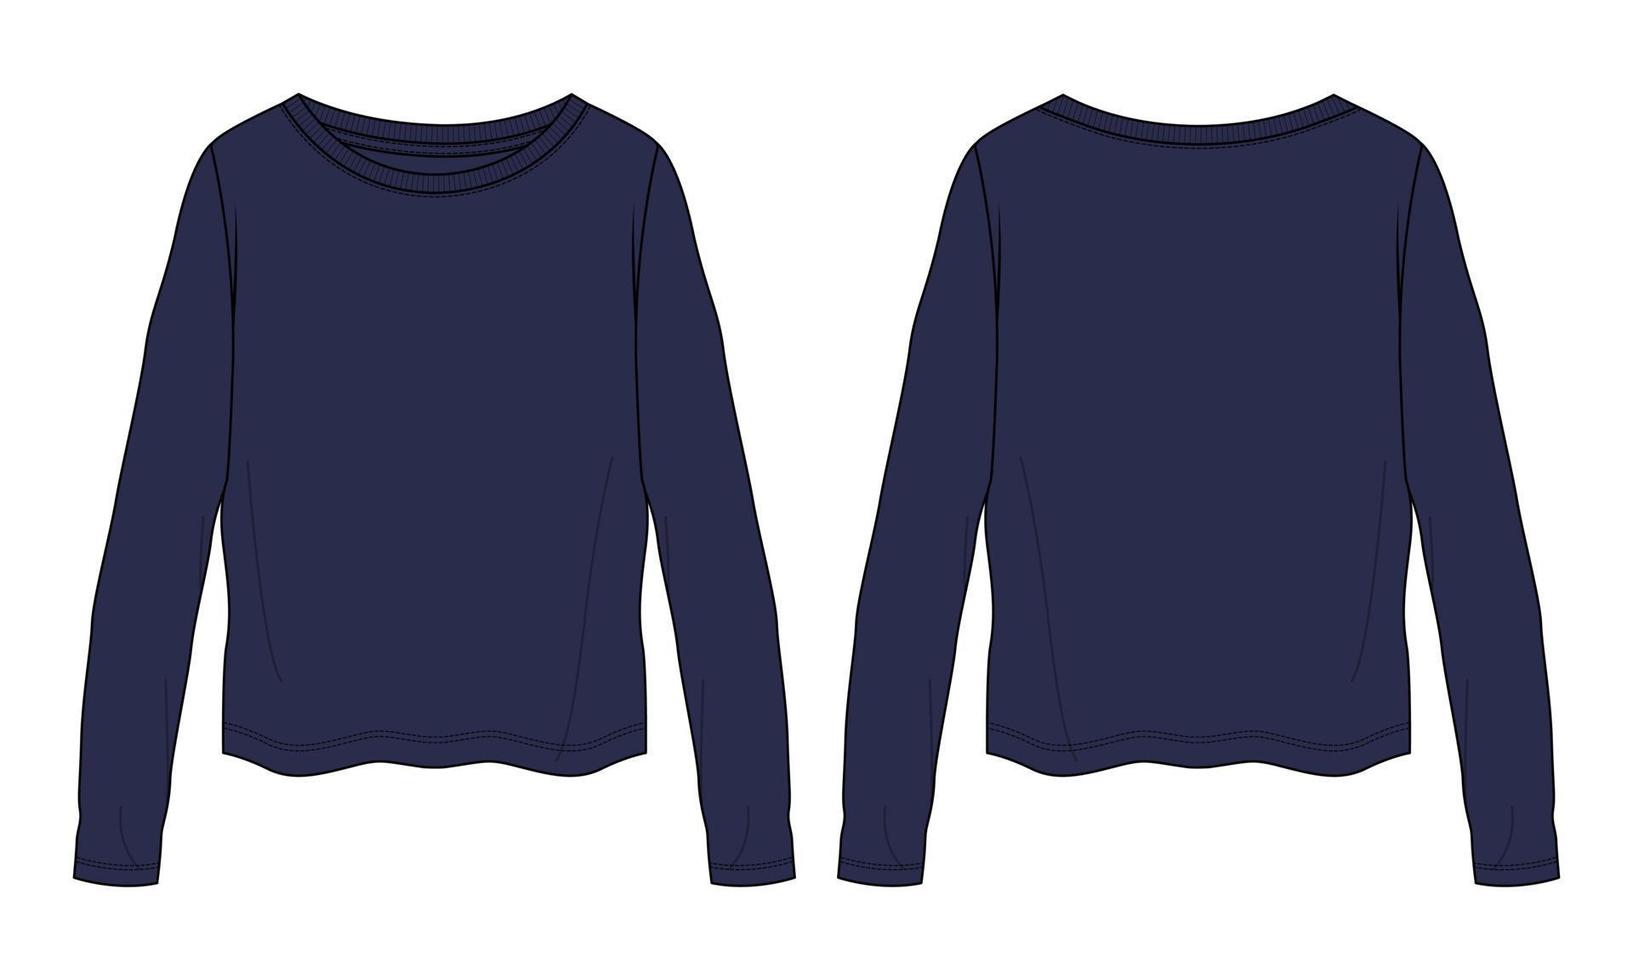 relax fit camiseta de manga larga moda técnica boceto plano ilustración vectorial plantilla de color azul marino para mujer vector